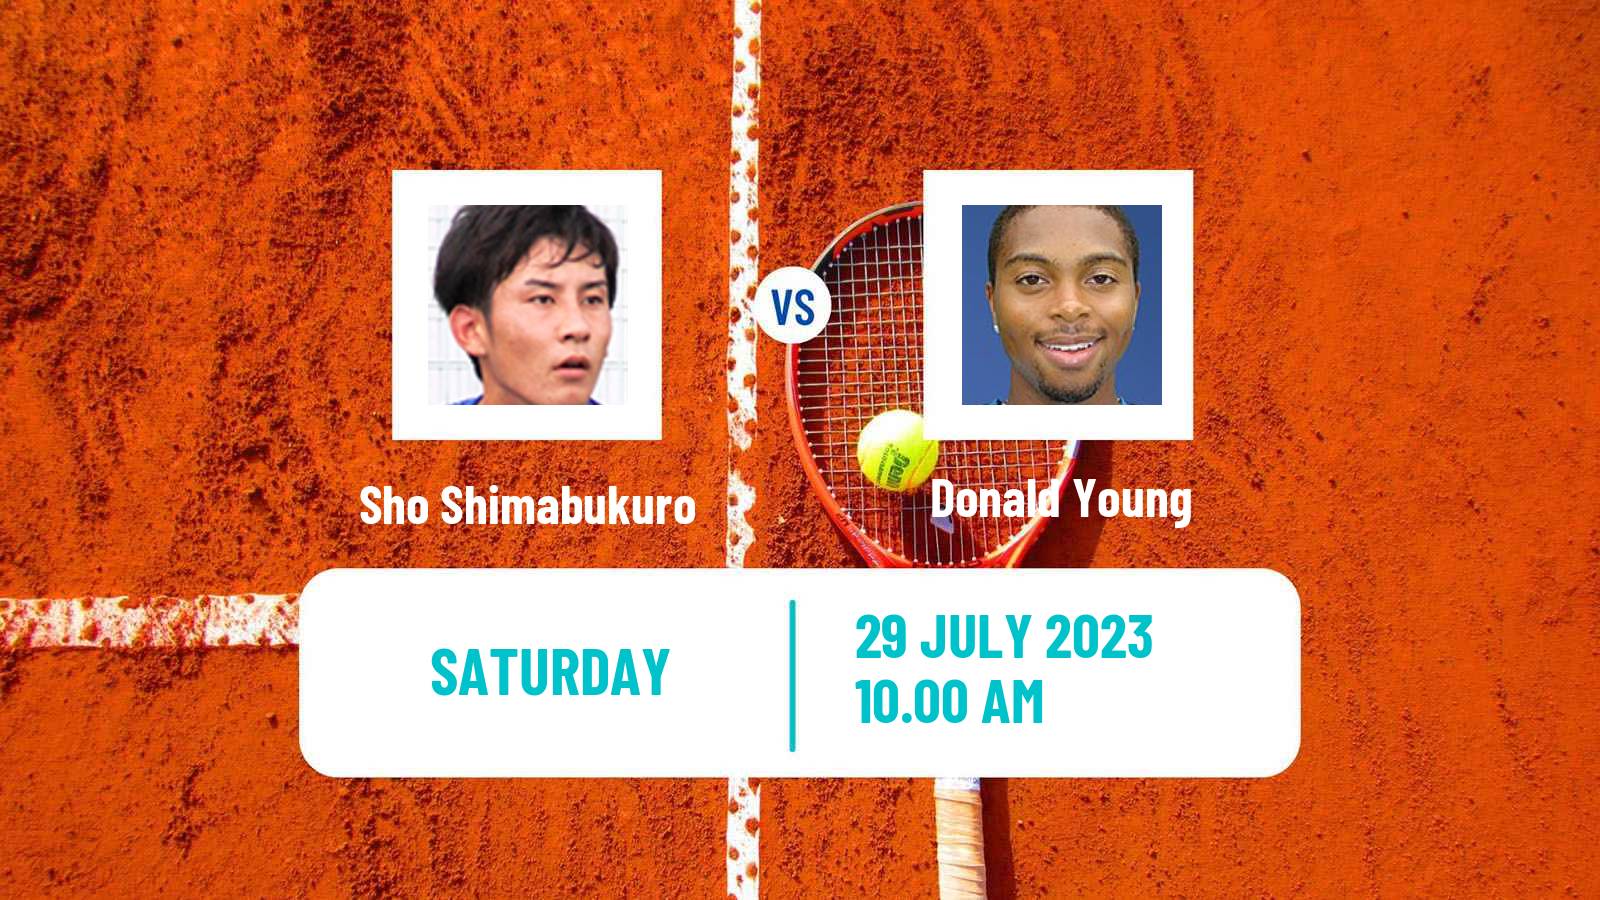 Tennis ATP Washington Sho Shimabukuro - Donald Young